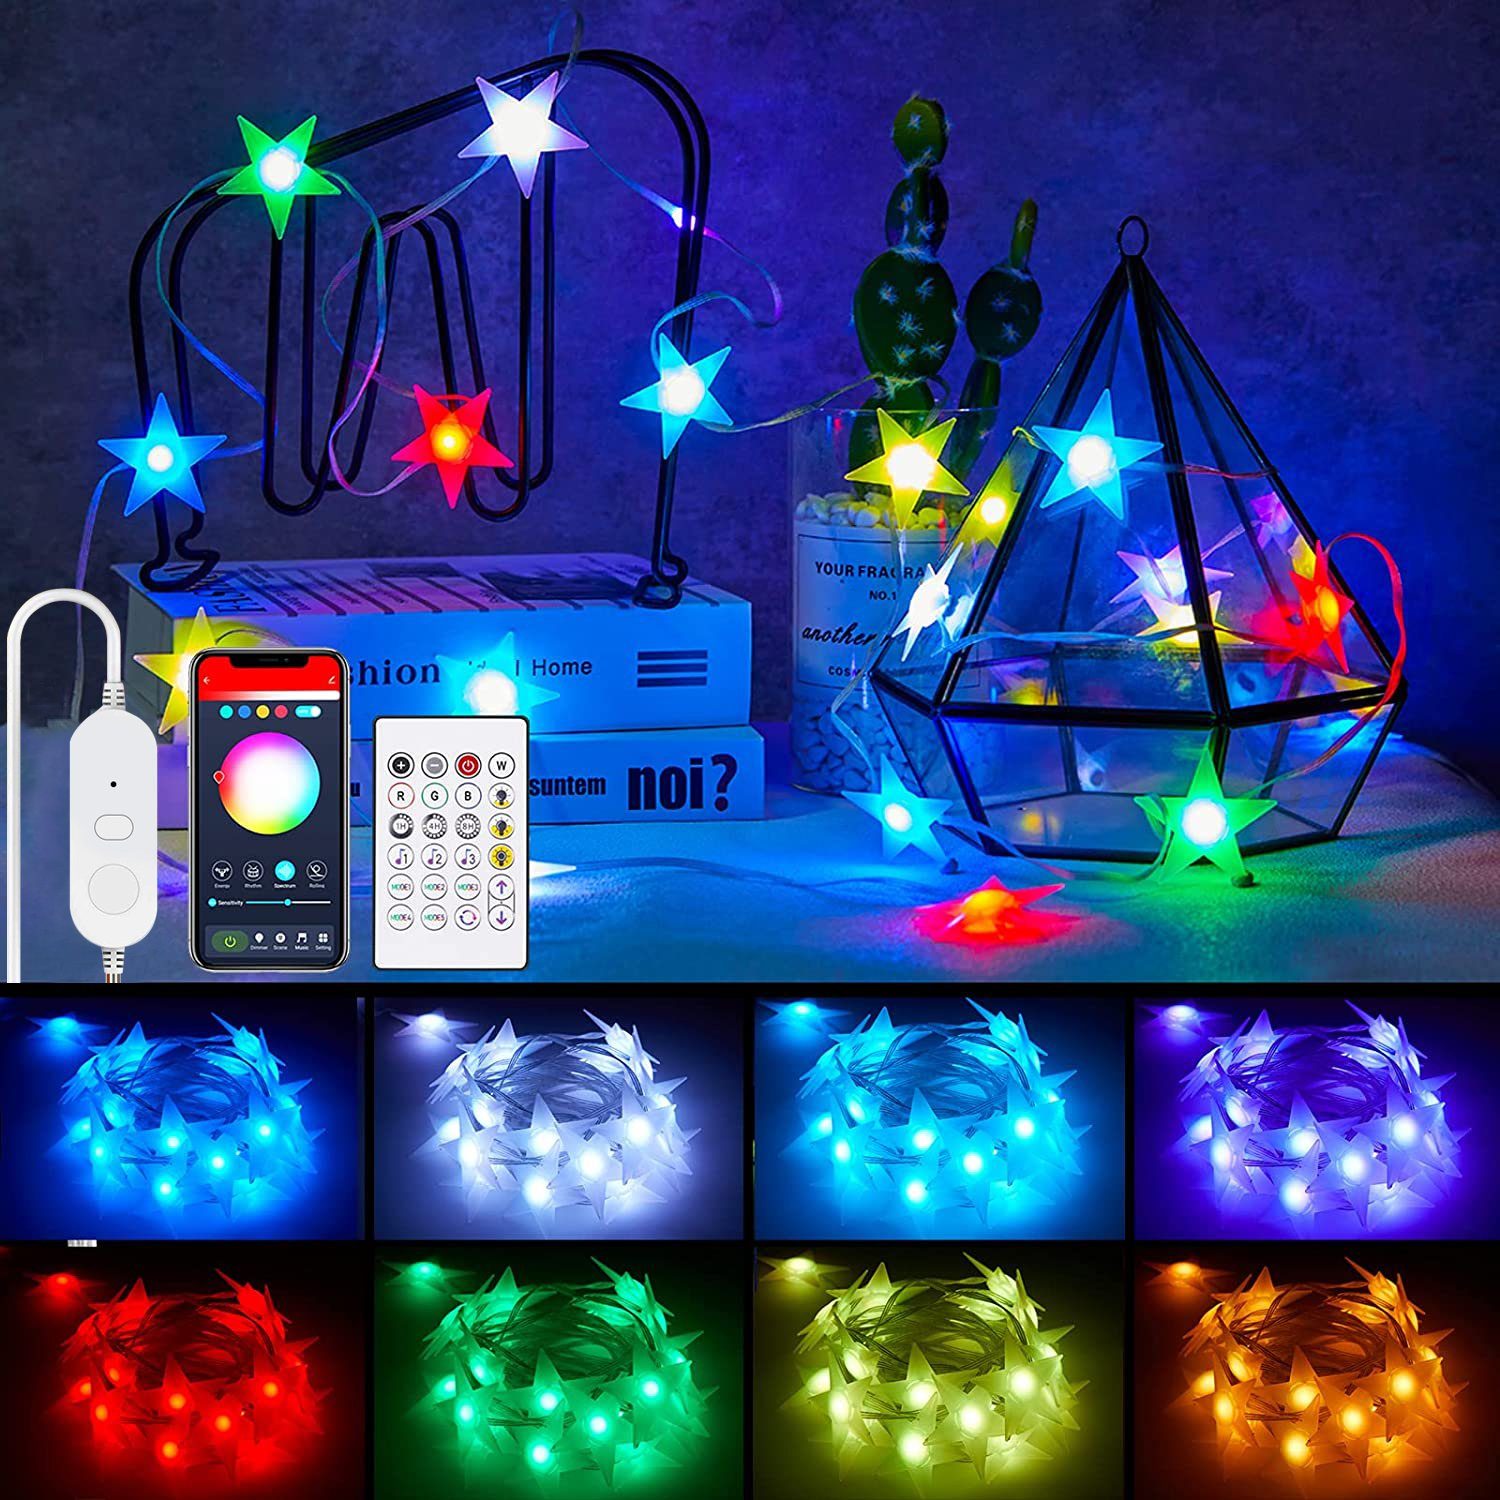 Oneid LED-Lichterkette Intelligente LED-Stern-Lichterketten für Party Dekoration Schlafzimmer